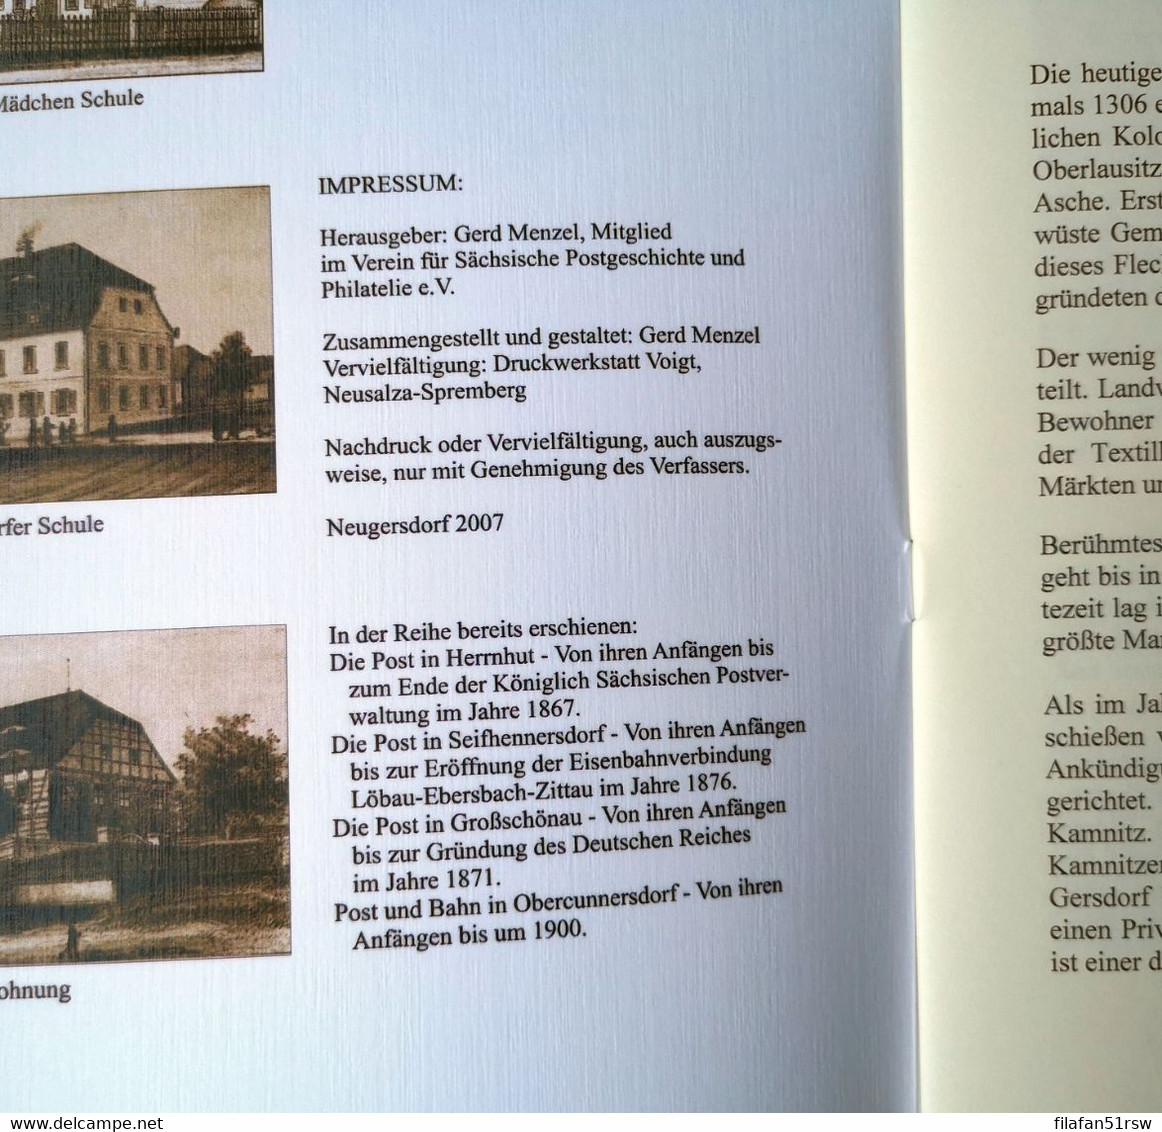 Die Post In Neugersdorf, Von Ihren Anfängen Bis In Die Siebziger Jahre Des 19. Jhdt. - Philately And Postal History